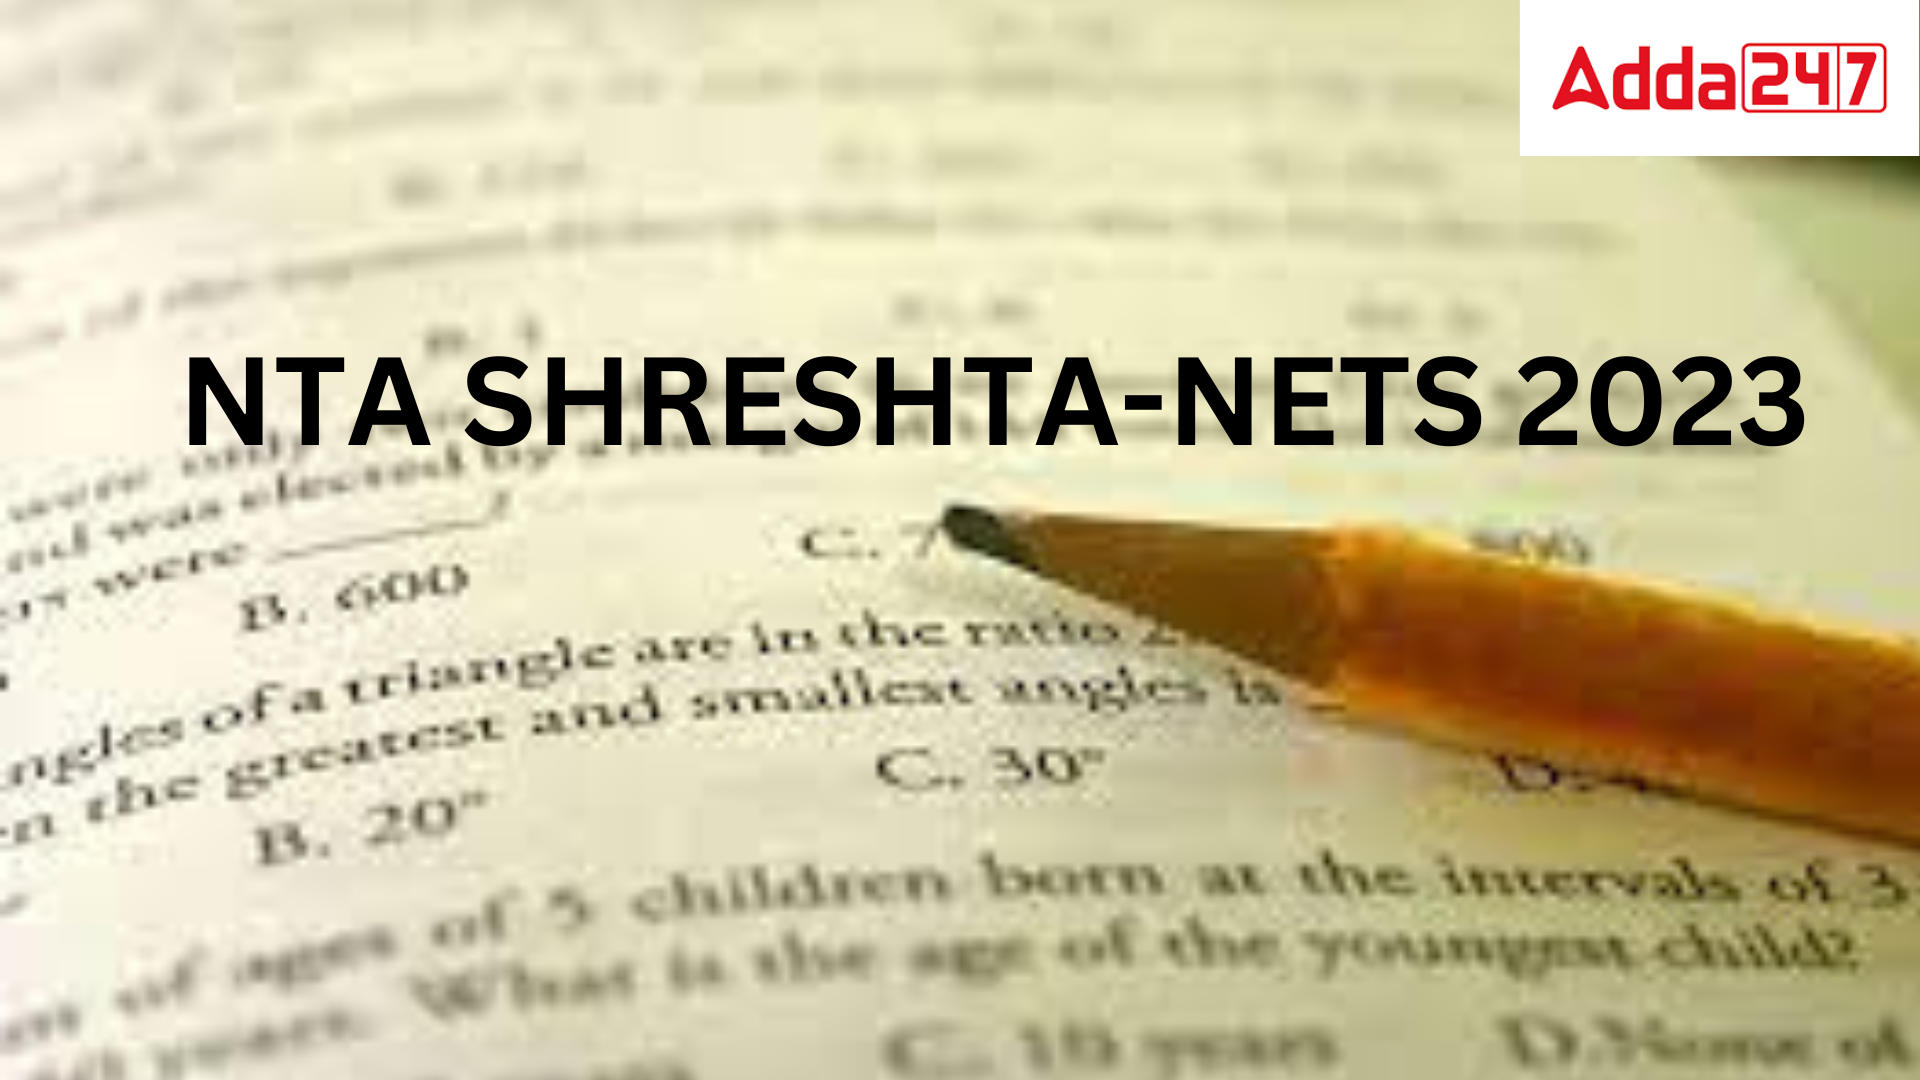 NTA SHRESHTA-NETS 2023